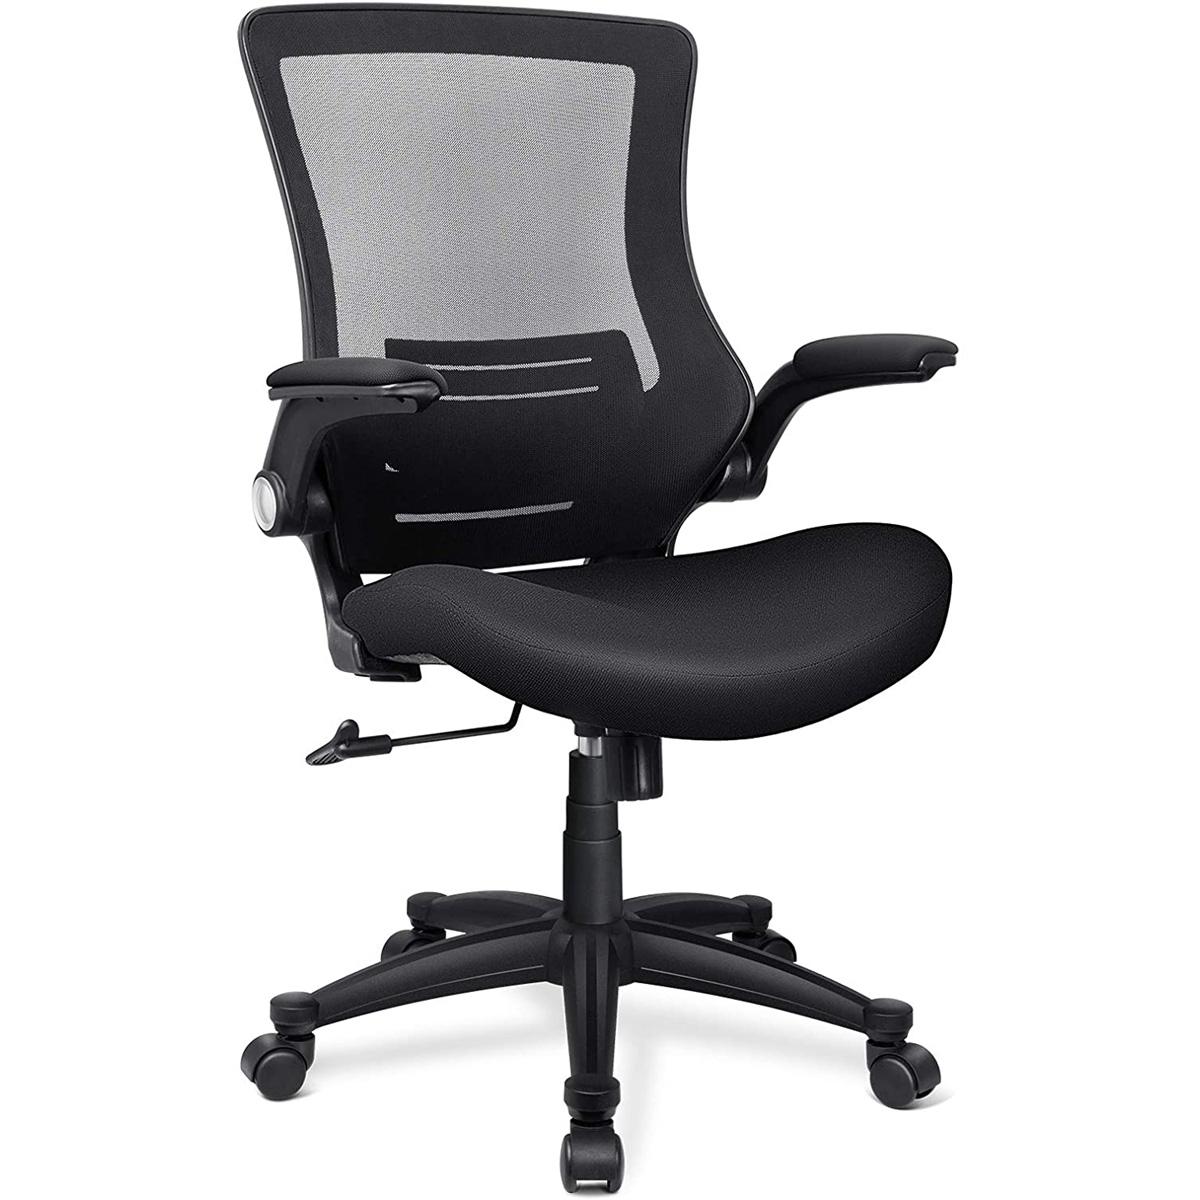 Funria Ergonomic Mesh Office Chair Swivel Mesh Desk Chair for $76.49 Shipped